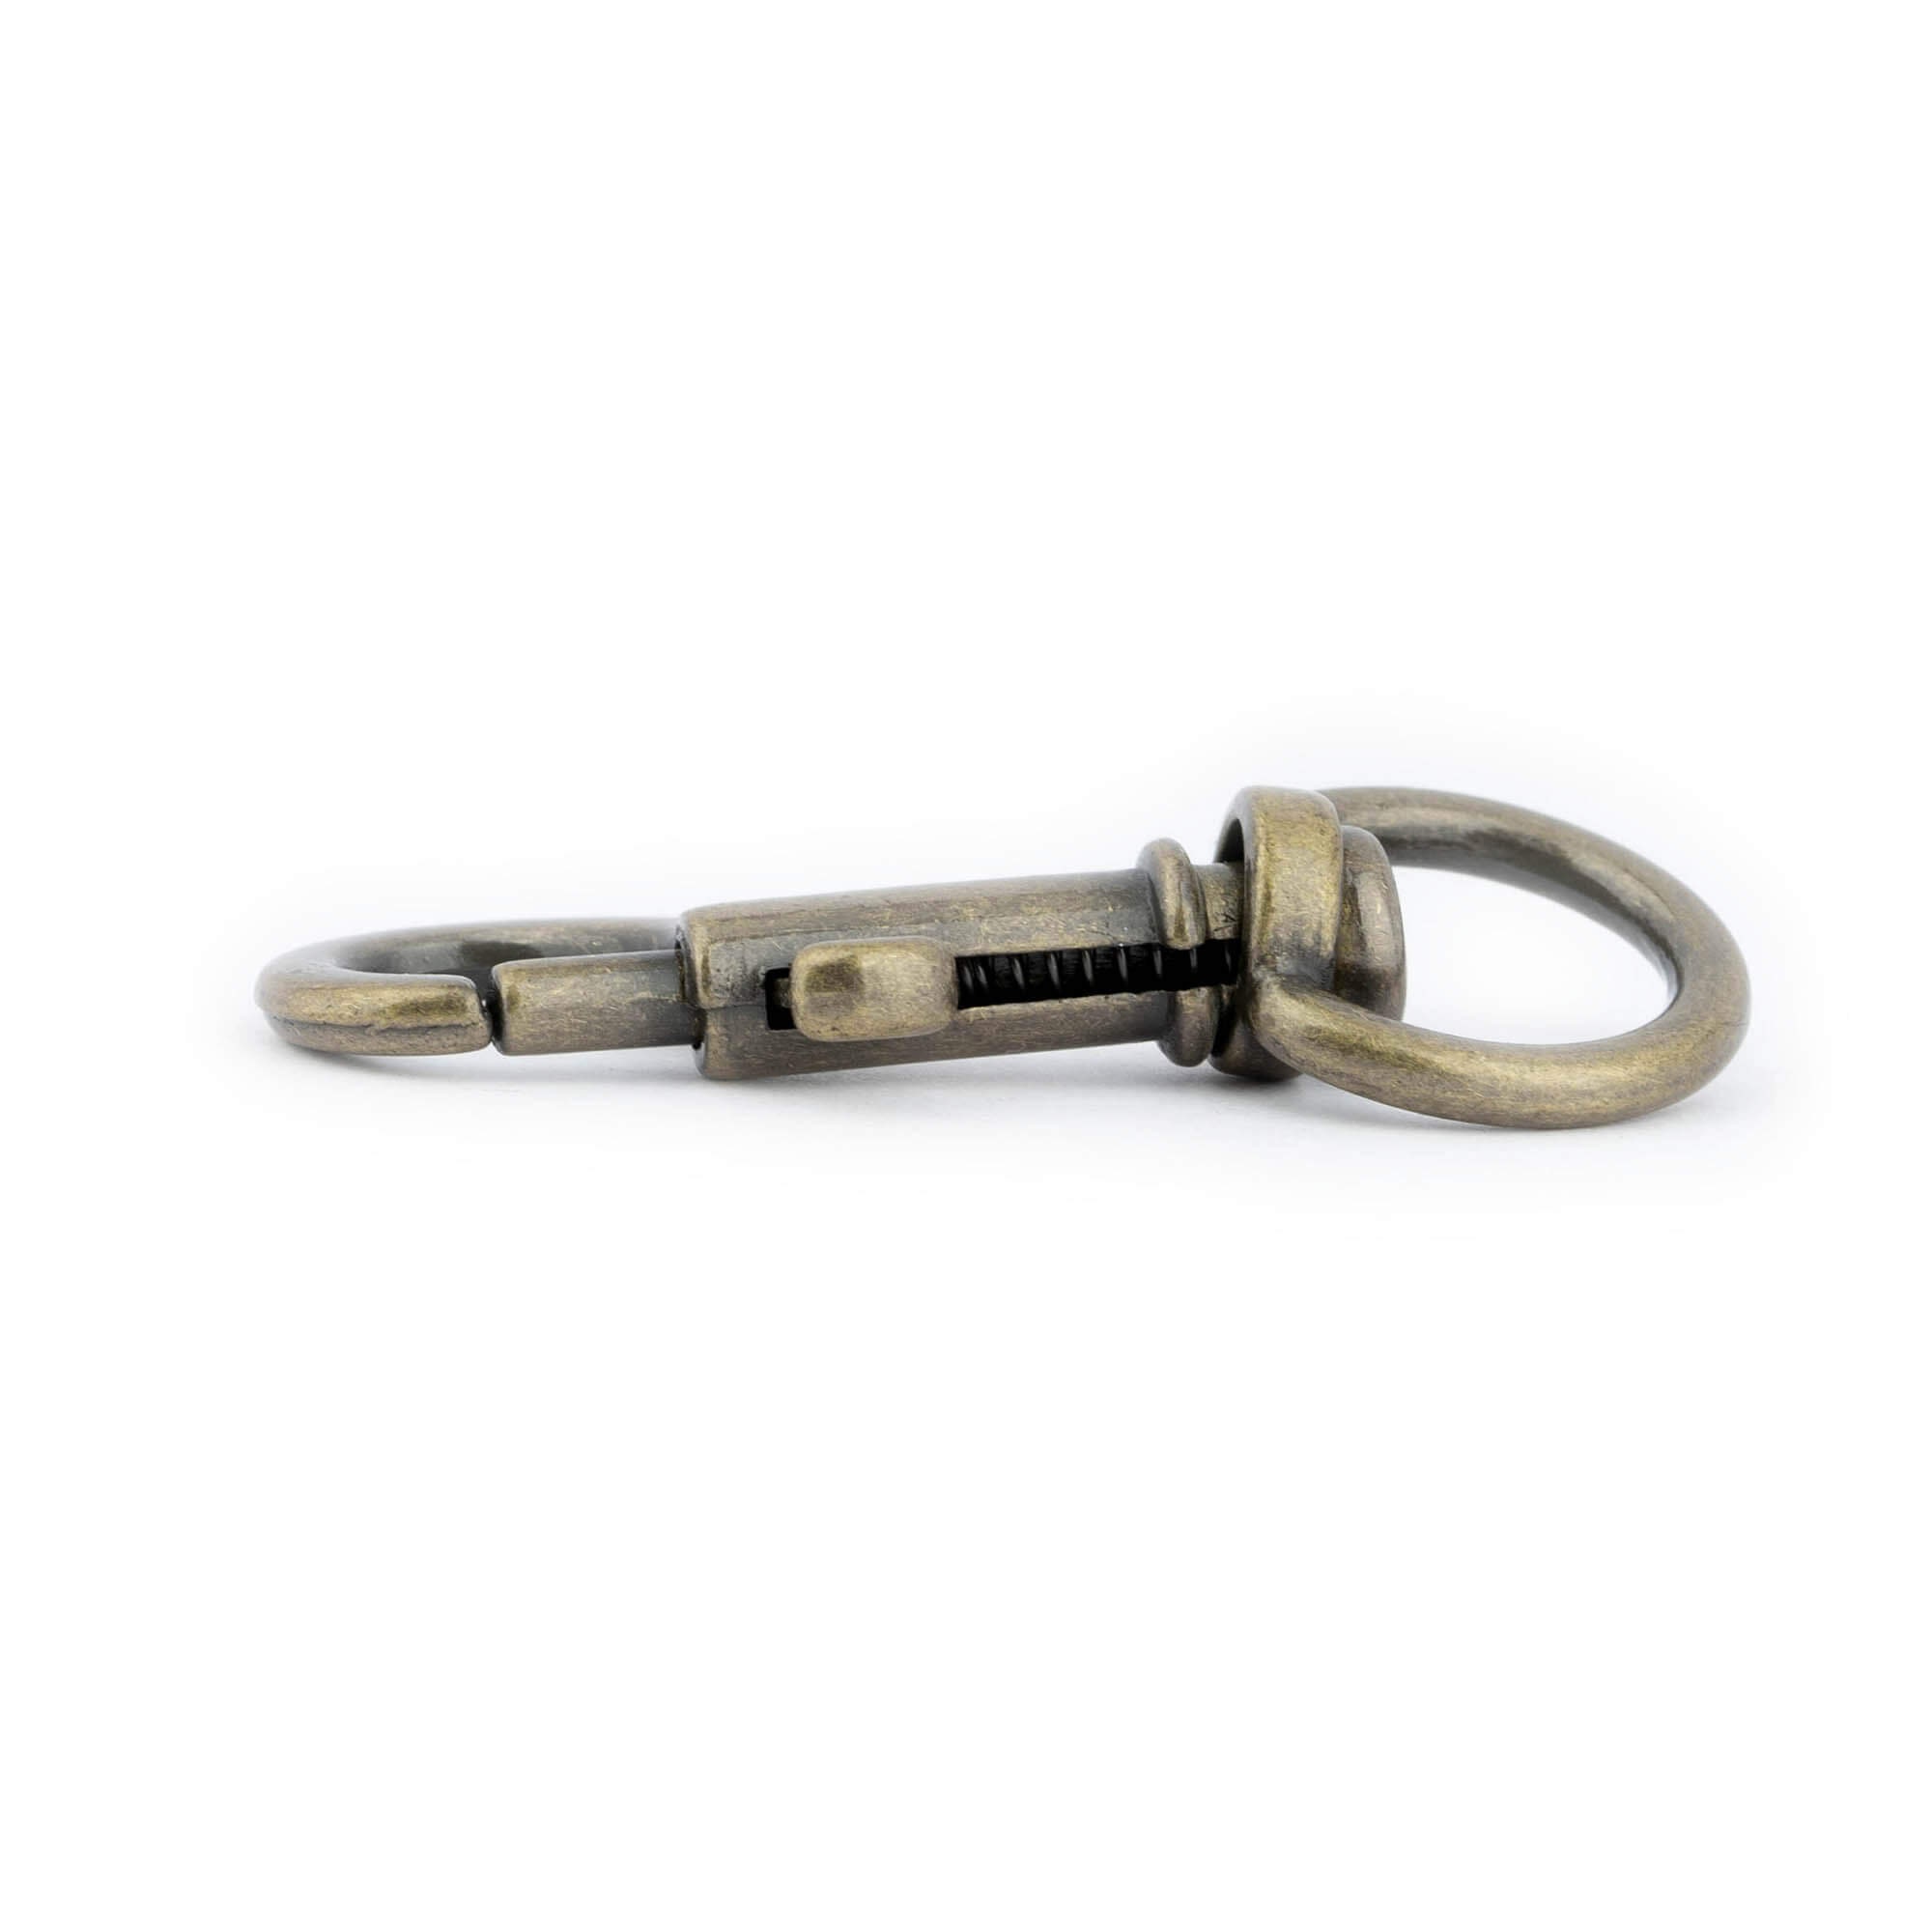 Snap Hook 46mm Bronze Snap Hook Swivel Dog Leash Metal Heavy Duty